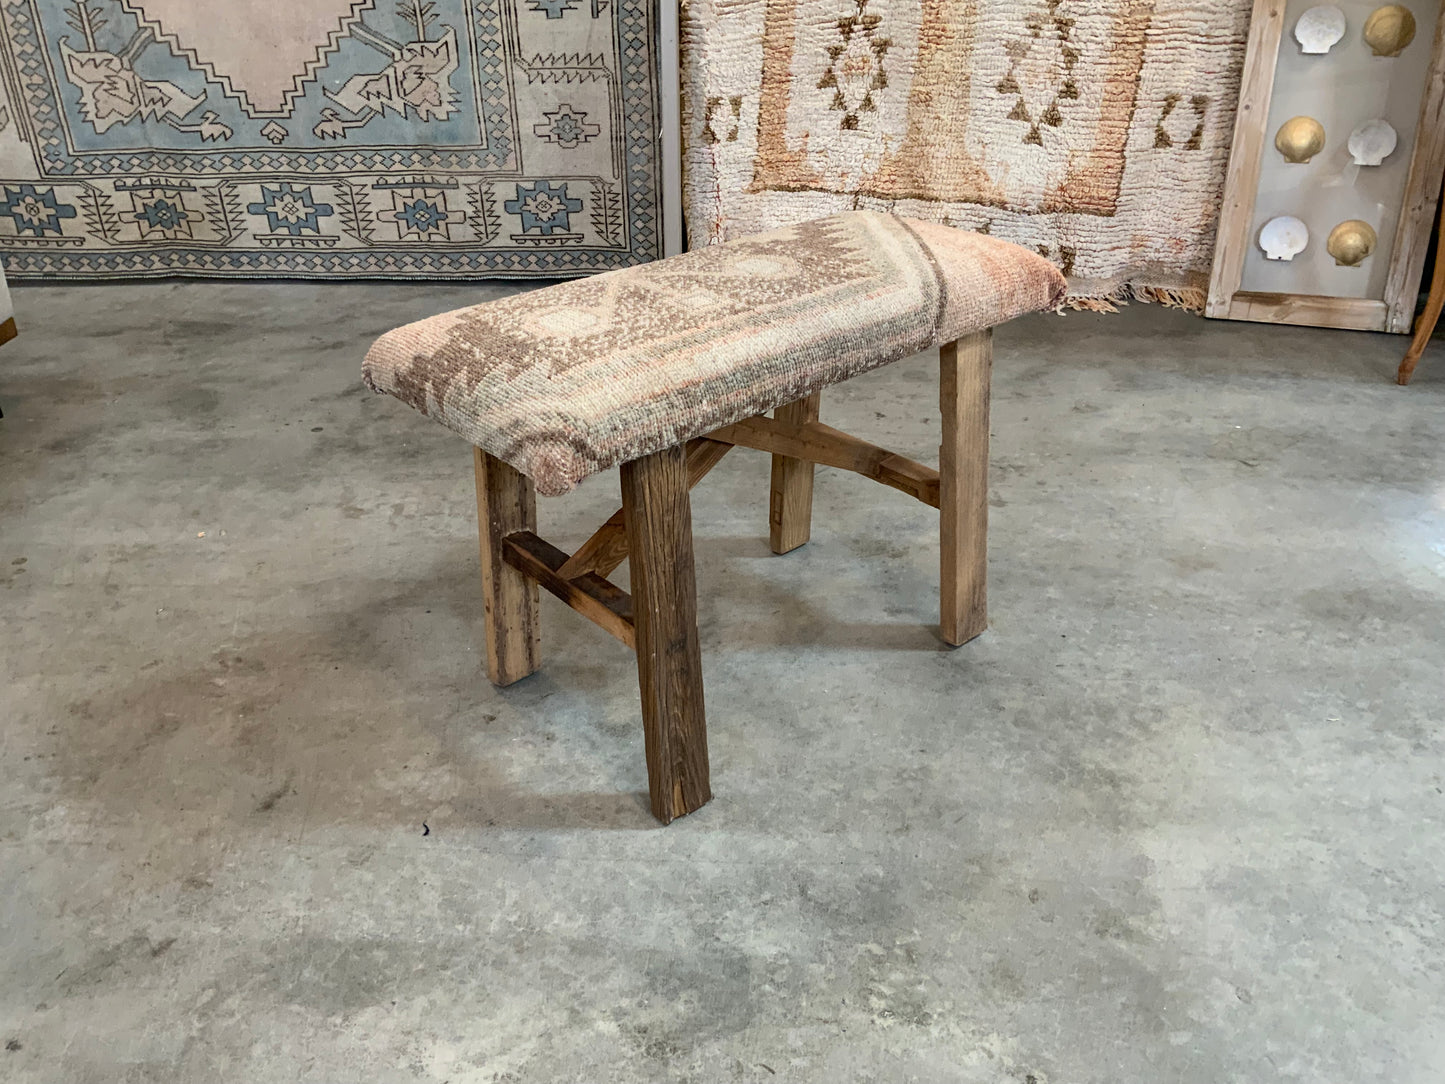 Med - Vintage Rug Upholstered Wood Bench